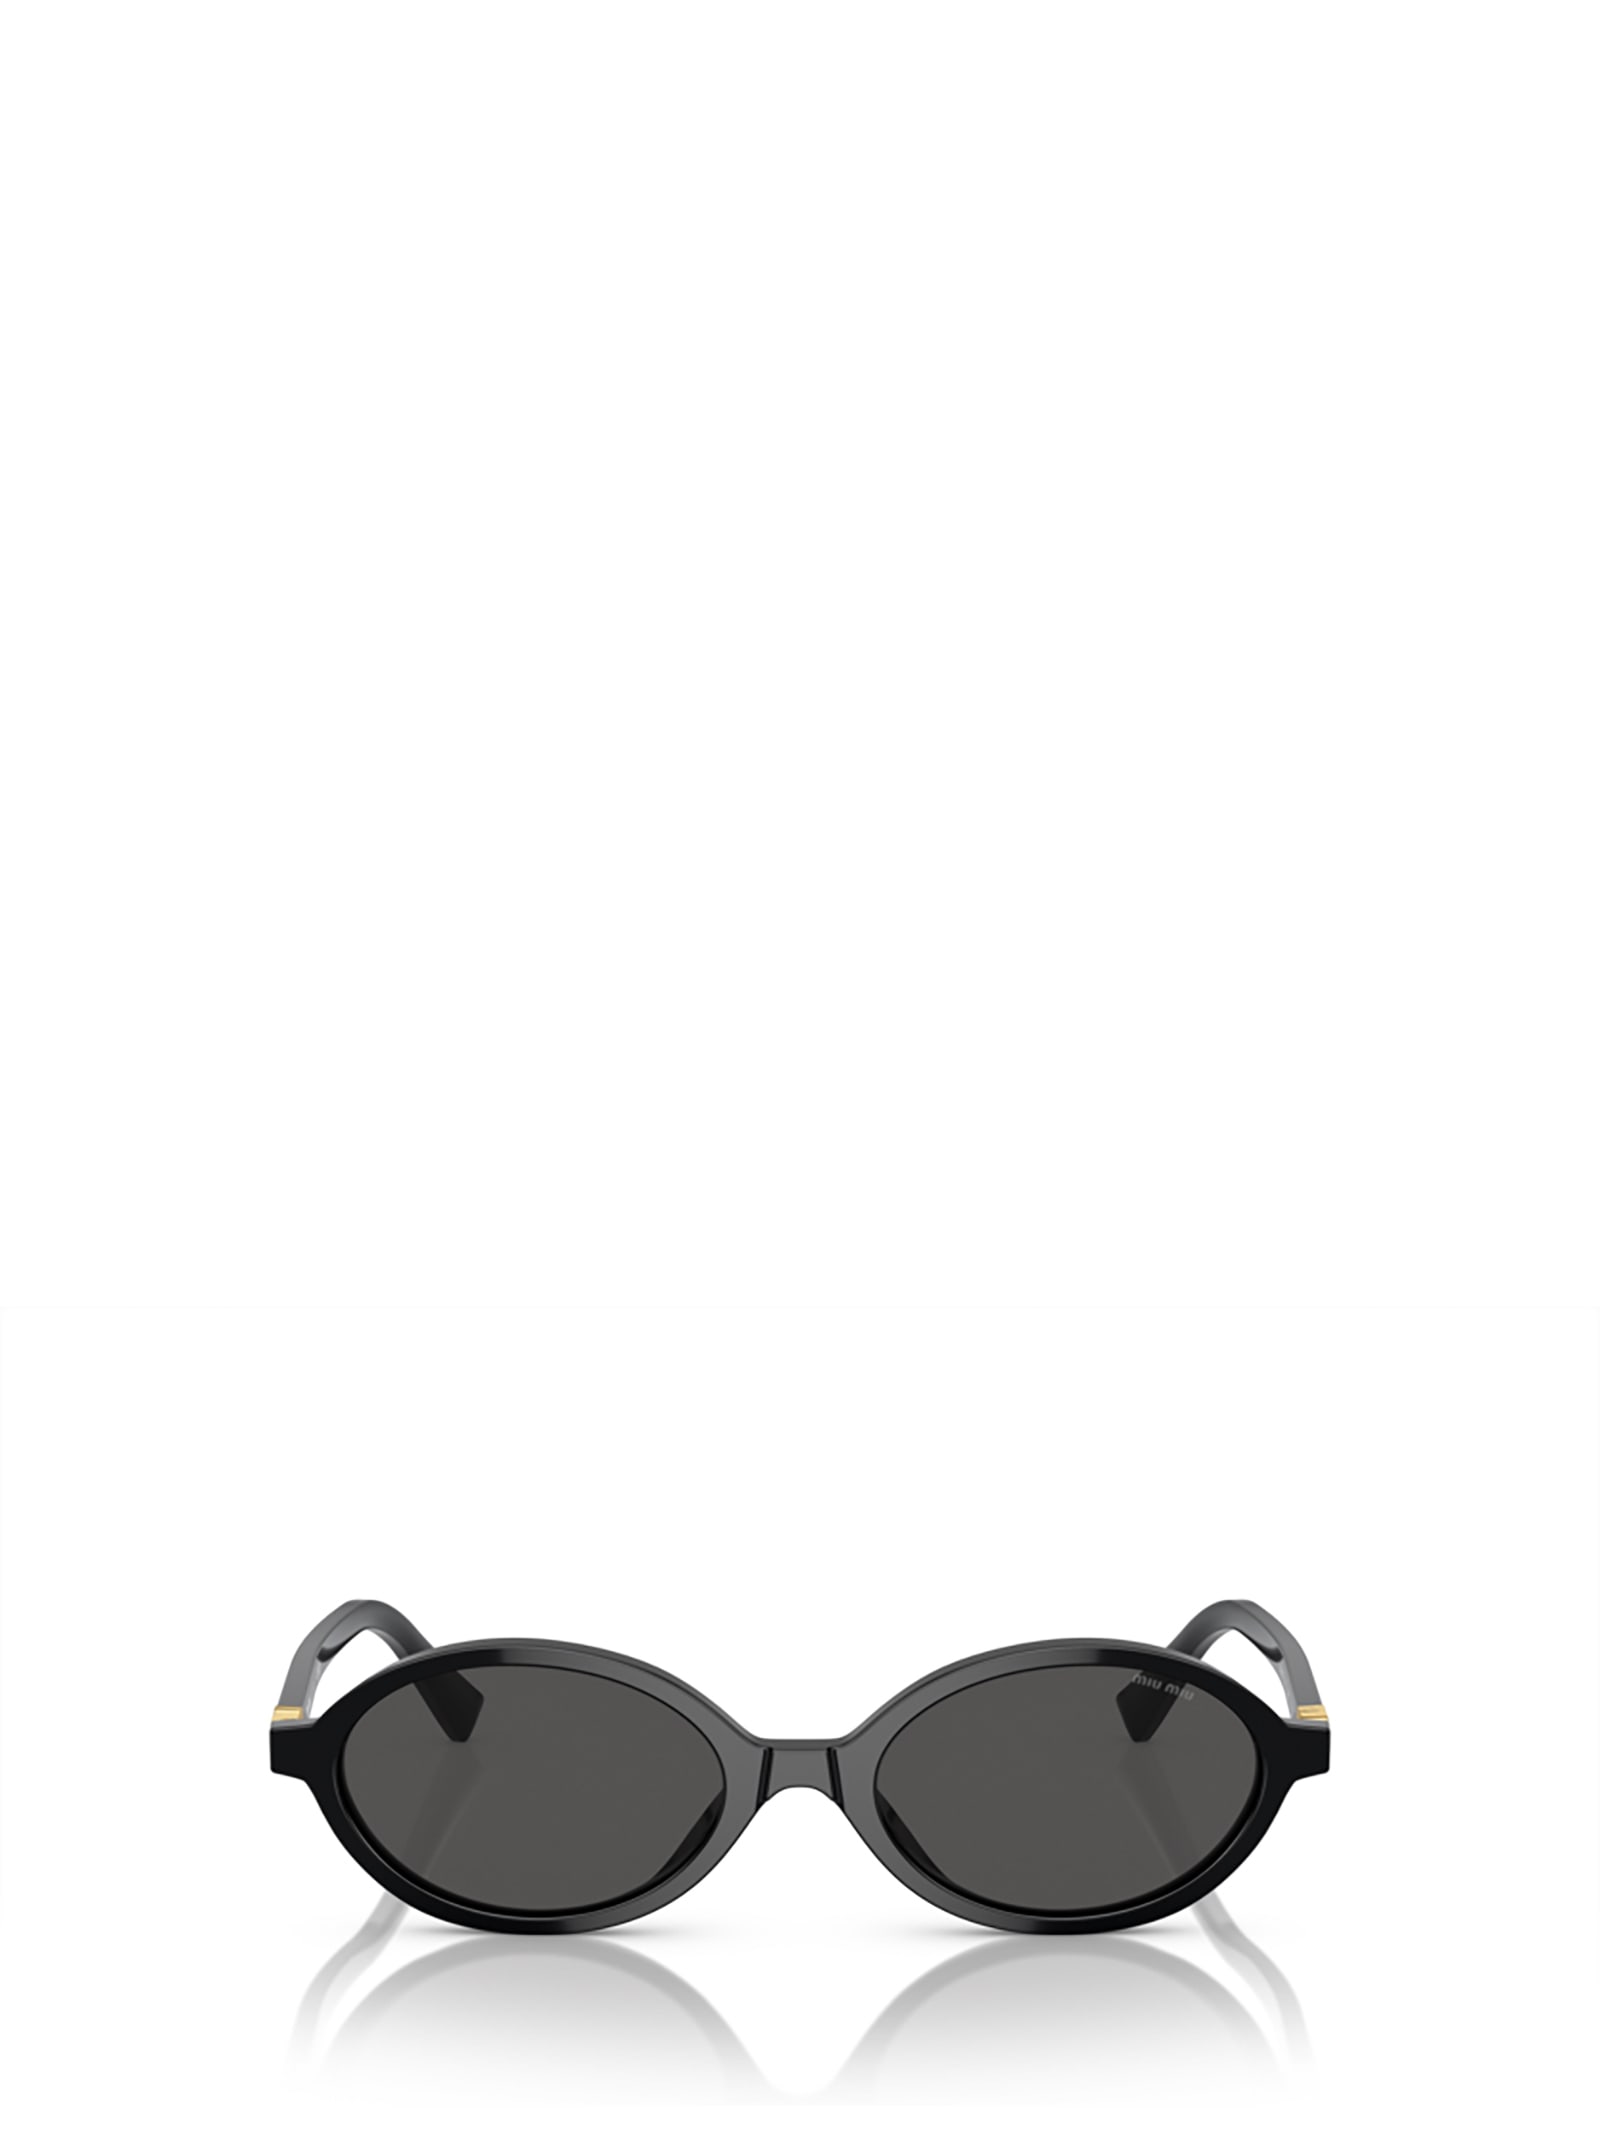 Mu 04zs Black Sunglasses